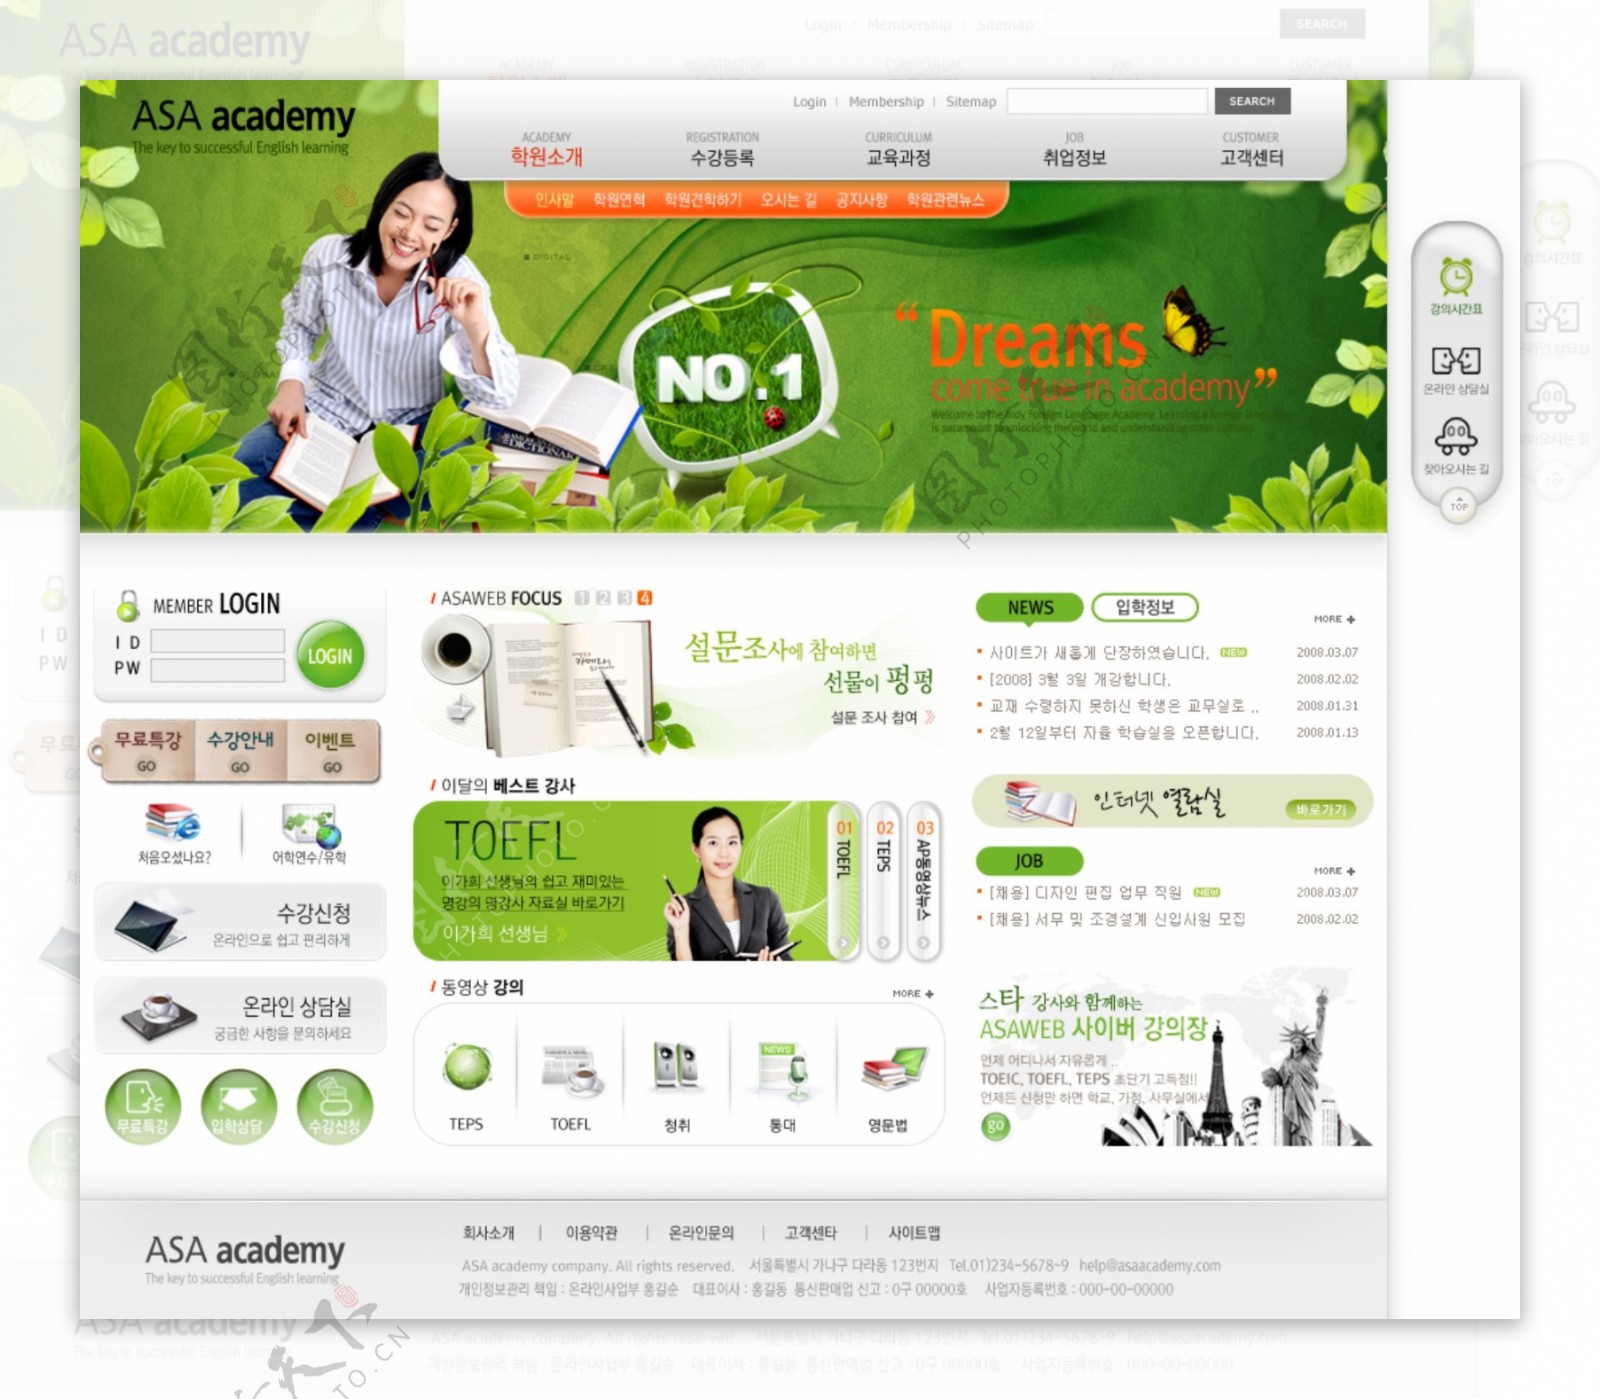 绿色商务培训企业网站模板